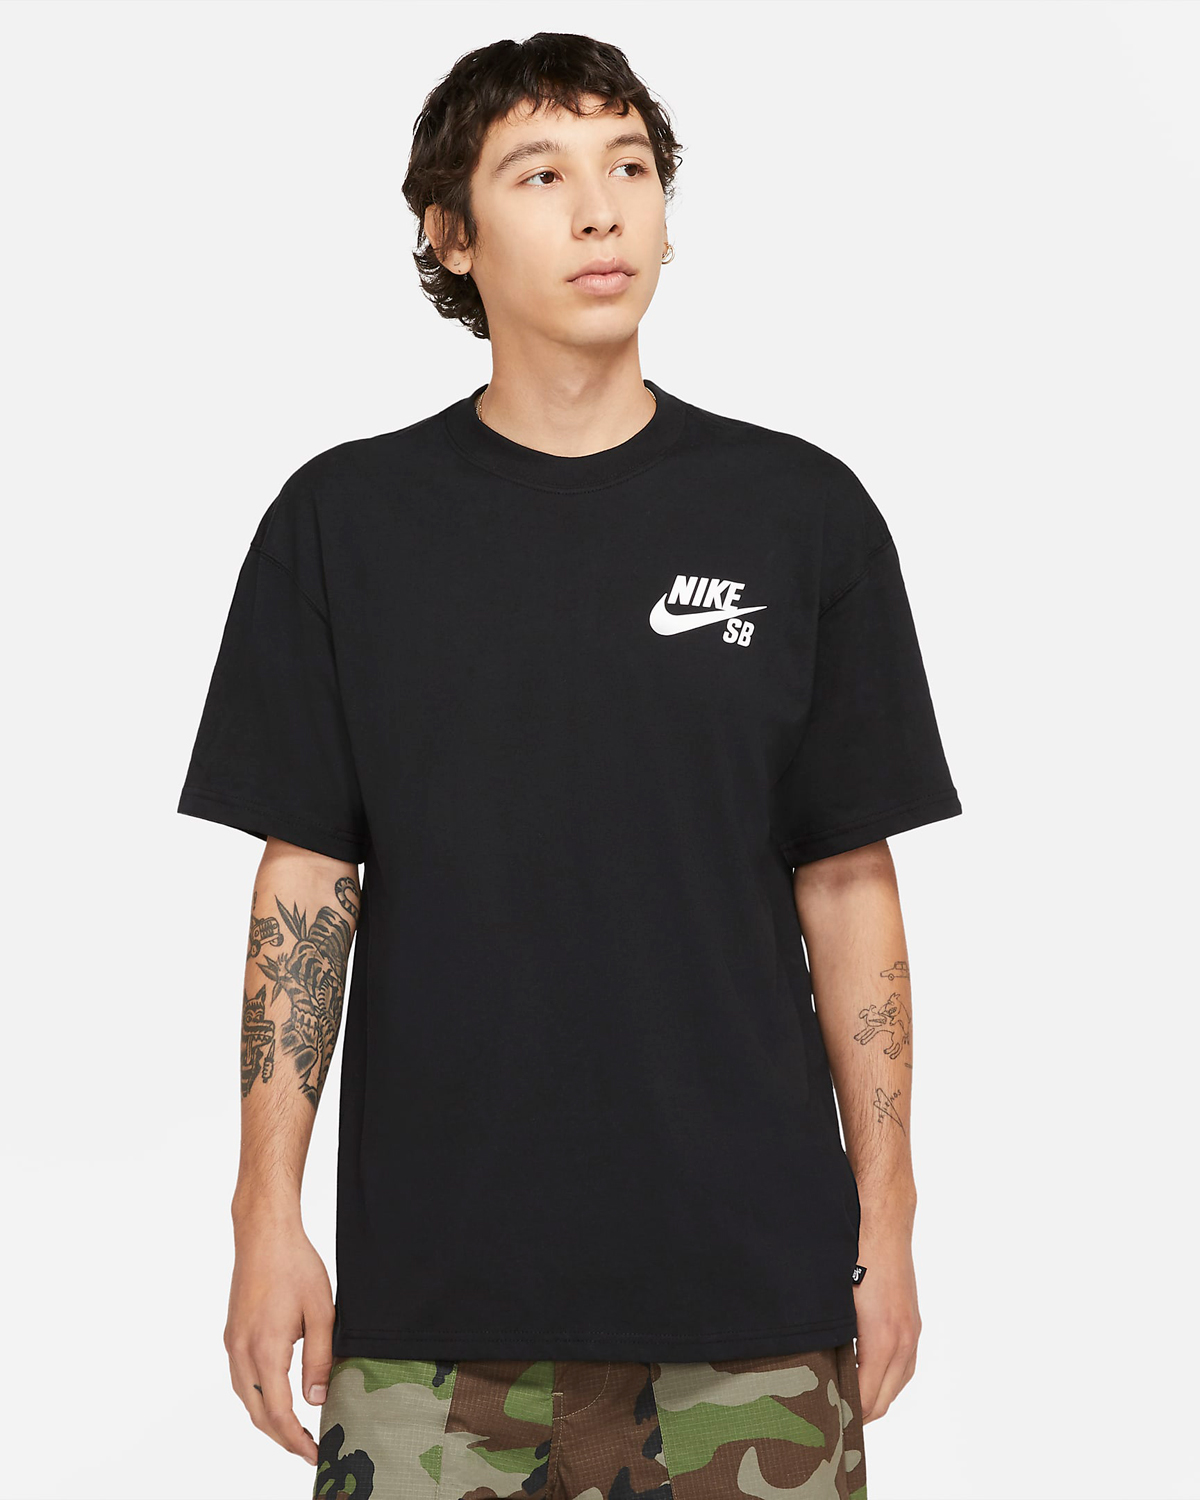 Nike-SB-Skate-Logo-T-Shirt-Black-White